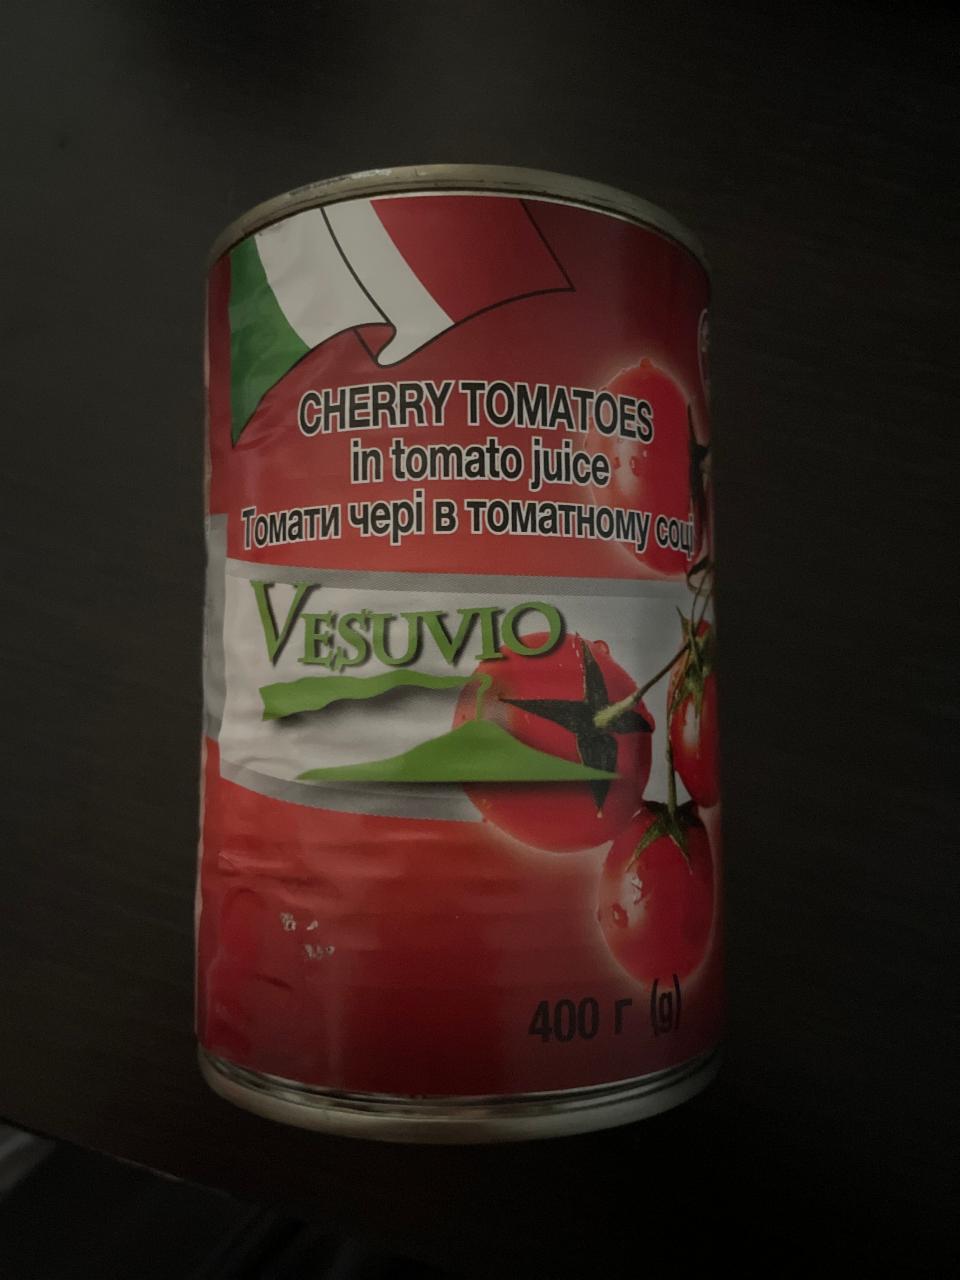 Фото - Томати чері в томатному соці Cherry Tomatoes Versuvio